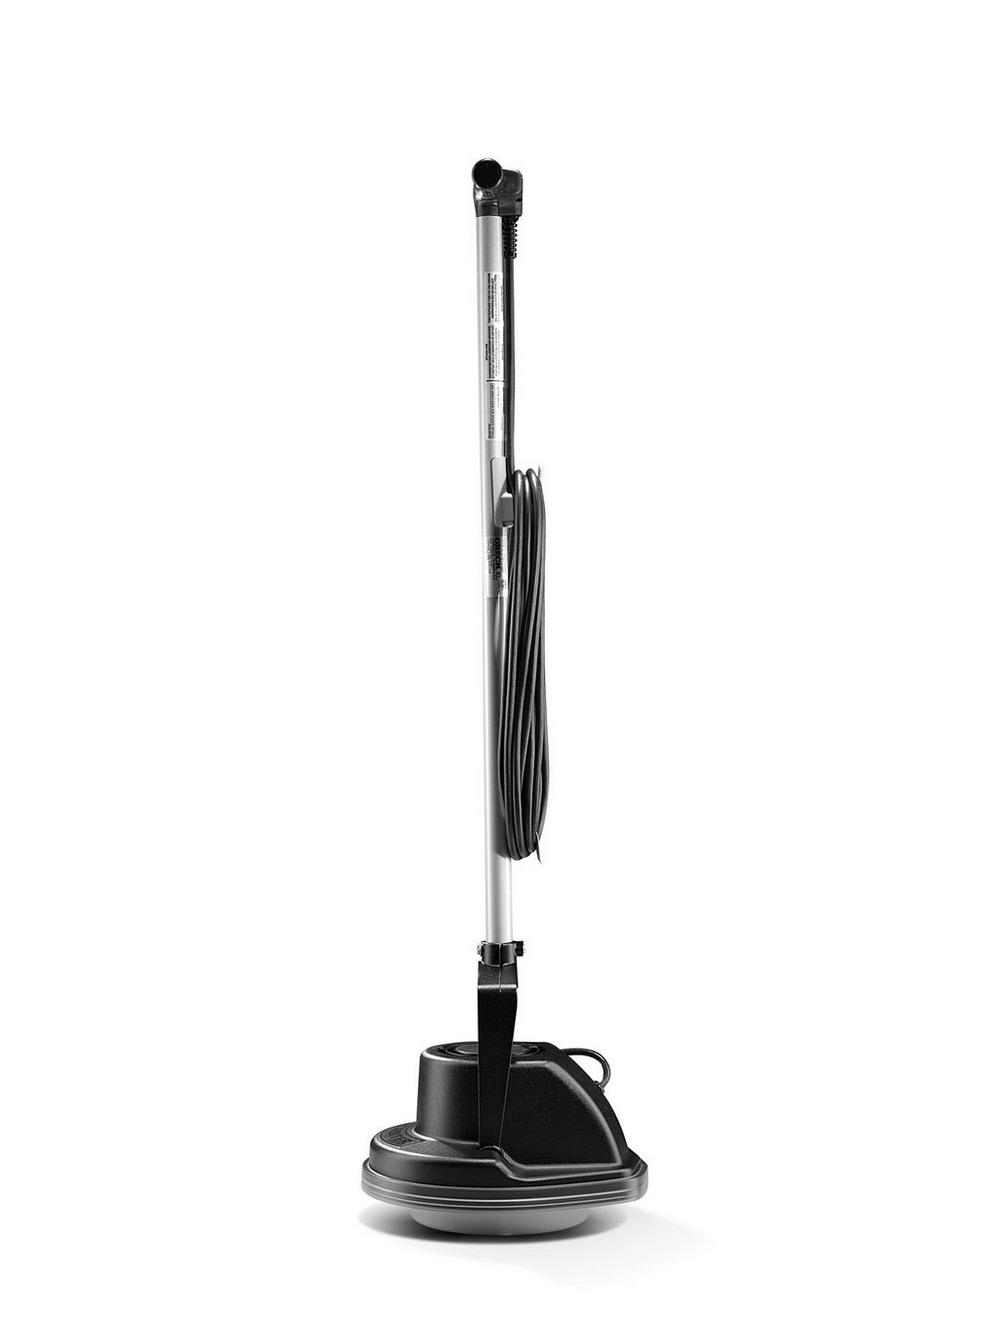 Oreck Orbiter Ultra Multi-Purpose Floor Cleaning Machine - Black